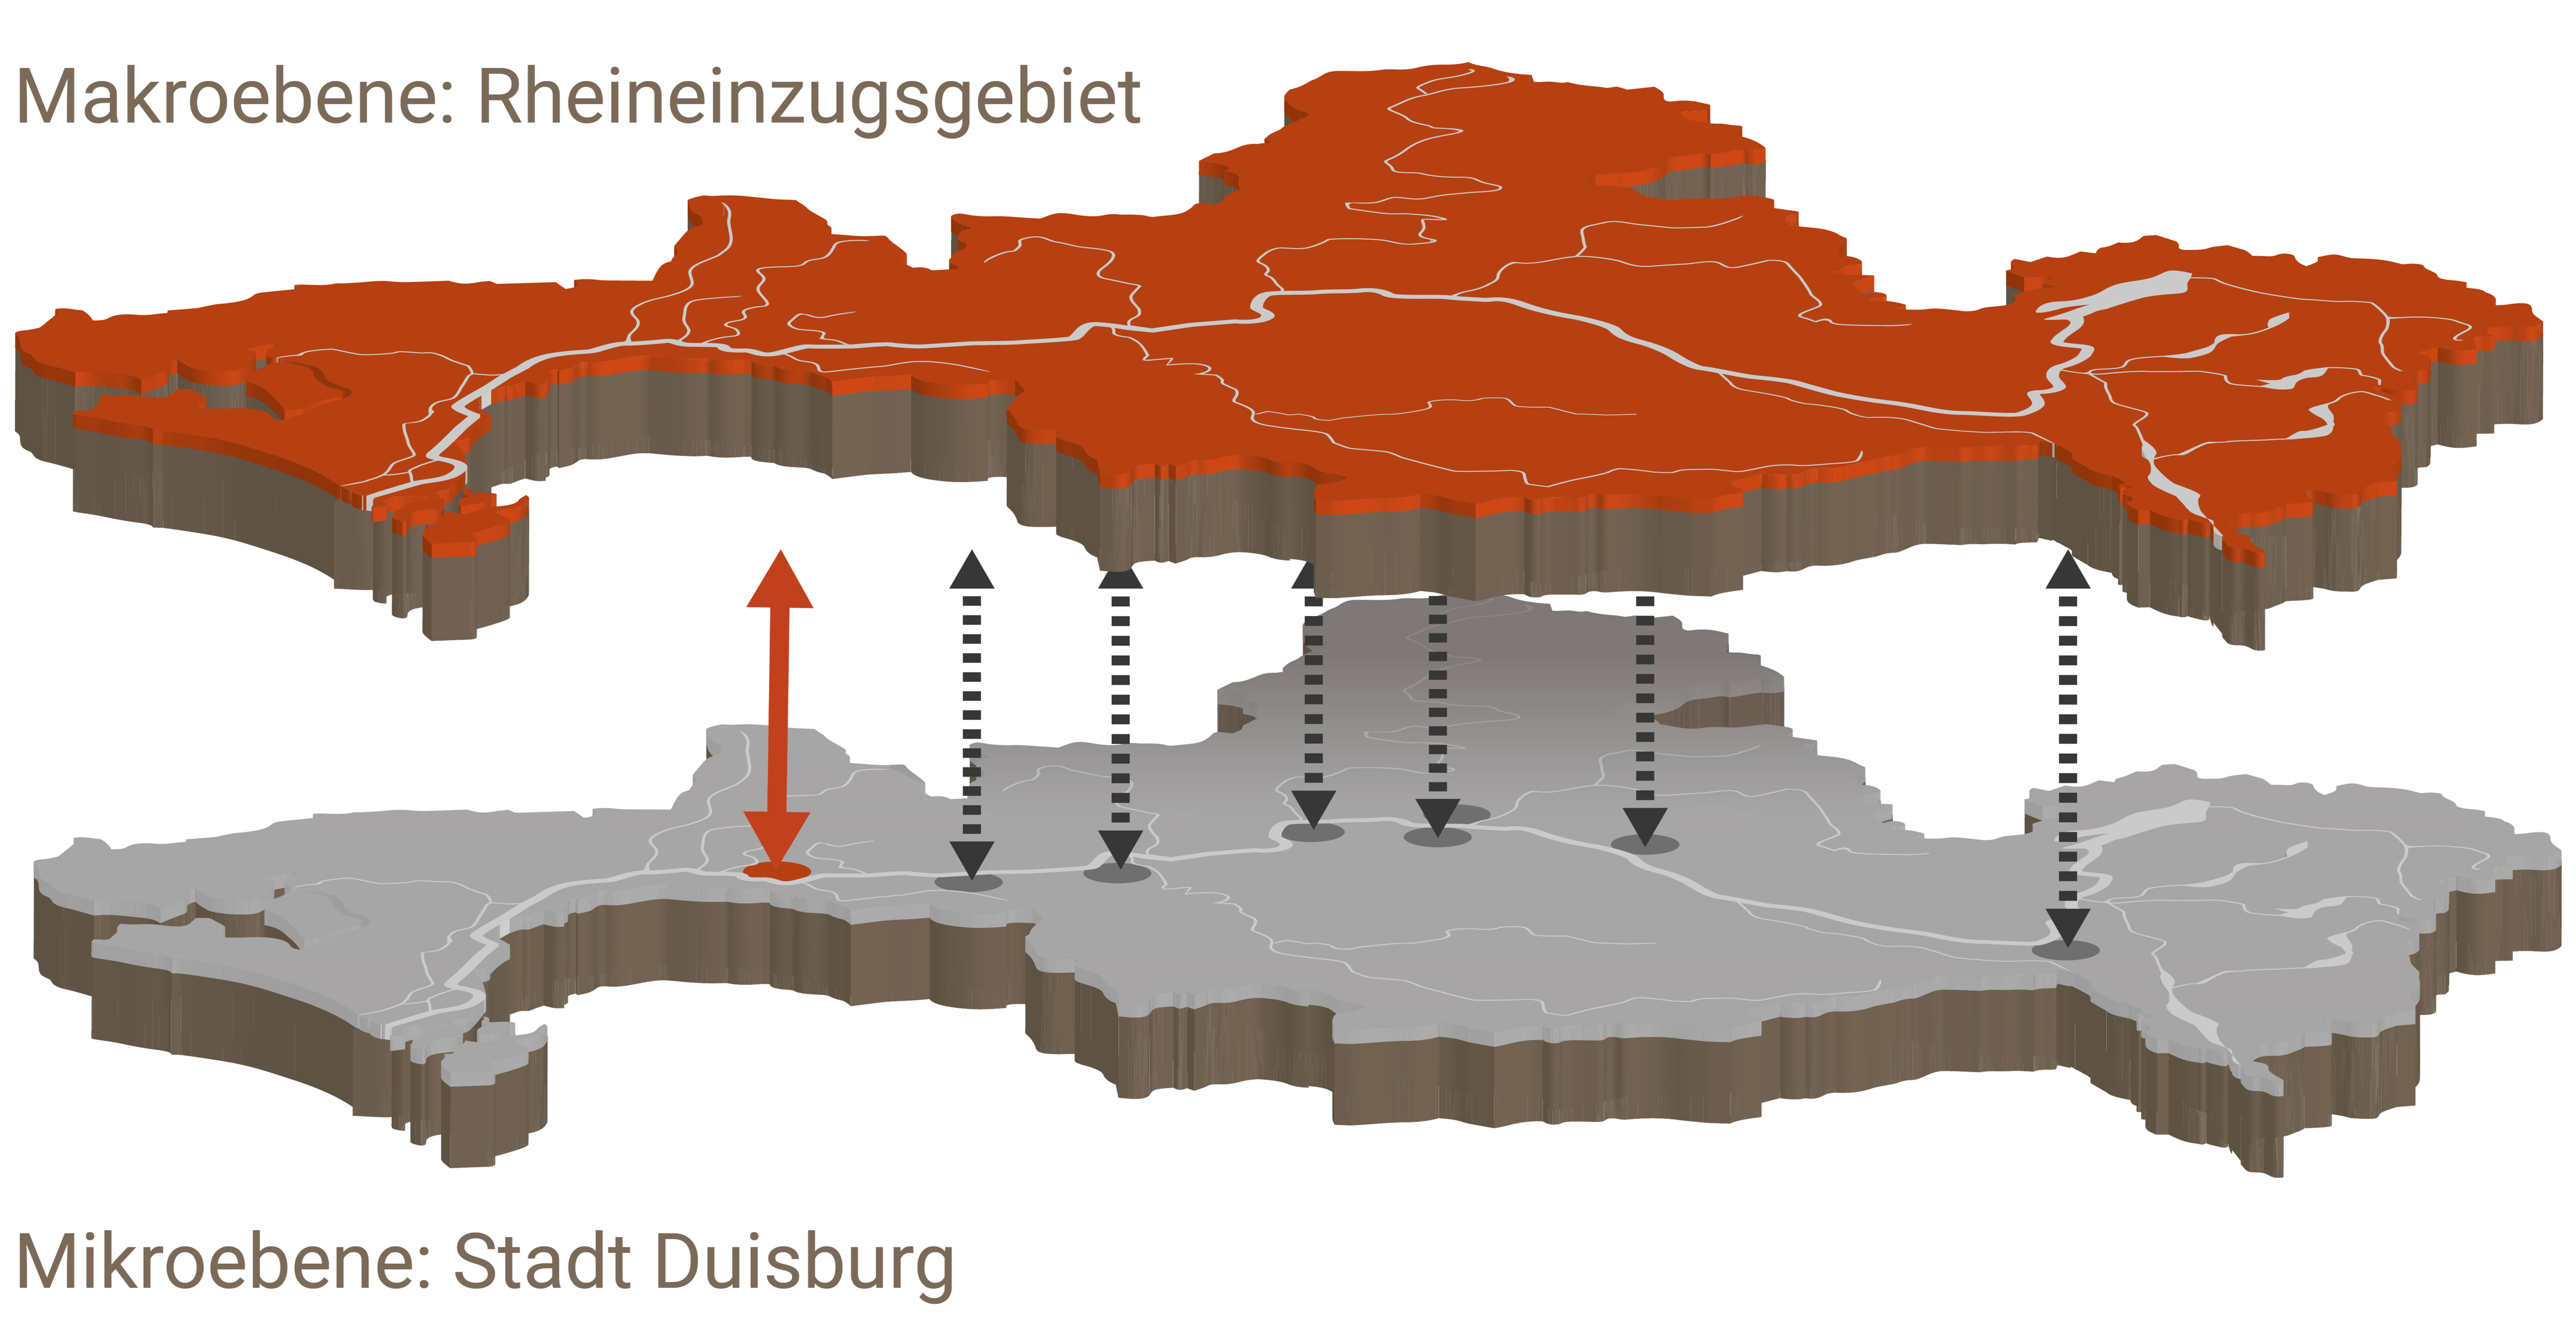 Es sind die beiden Betrachtungsebenen dargestellt, mit denen das Projekt R2K-Klim+ sich beschäftigt. Für die Makroebene ist das gesamte Rheineinzugsgebiet in Deutschland abgebildet. 